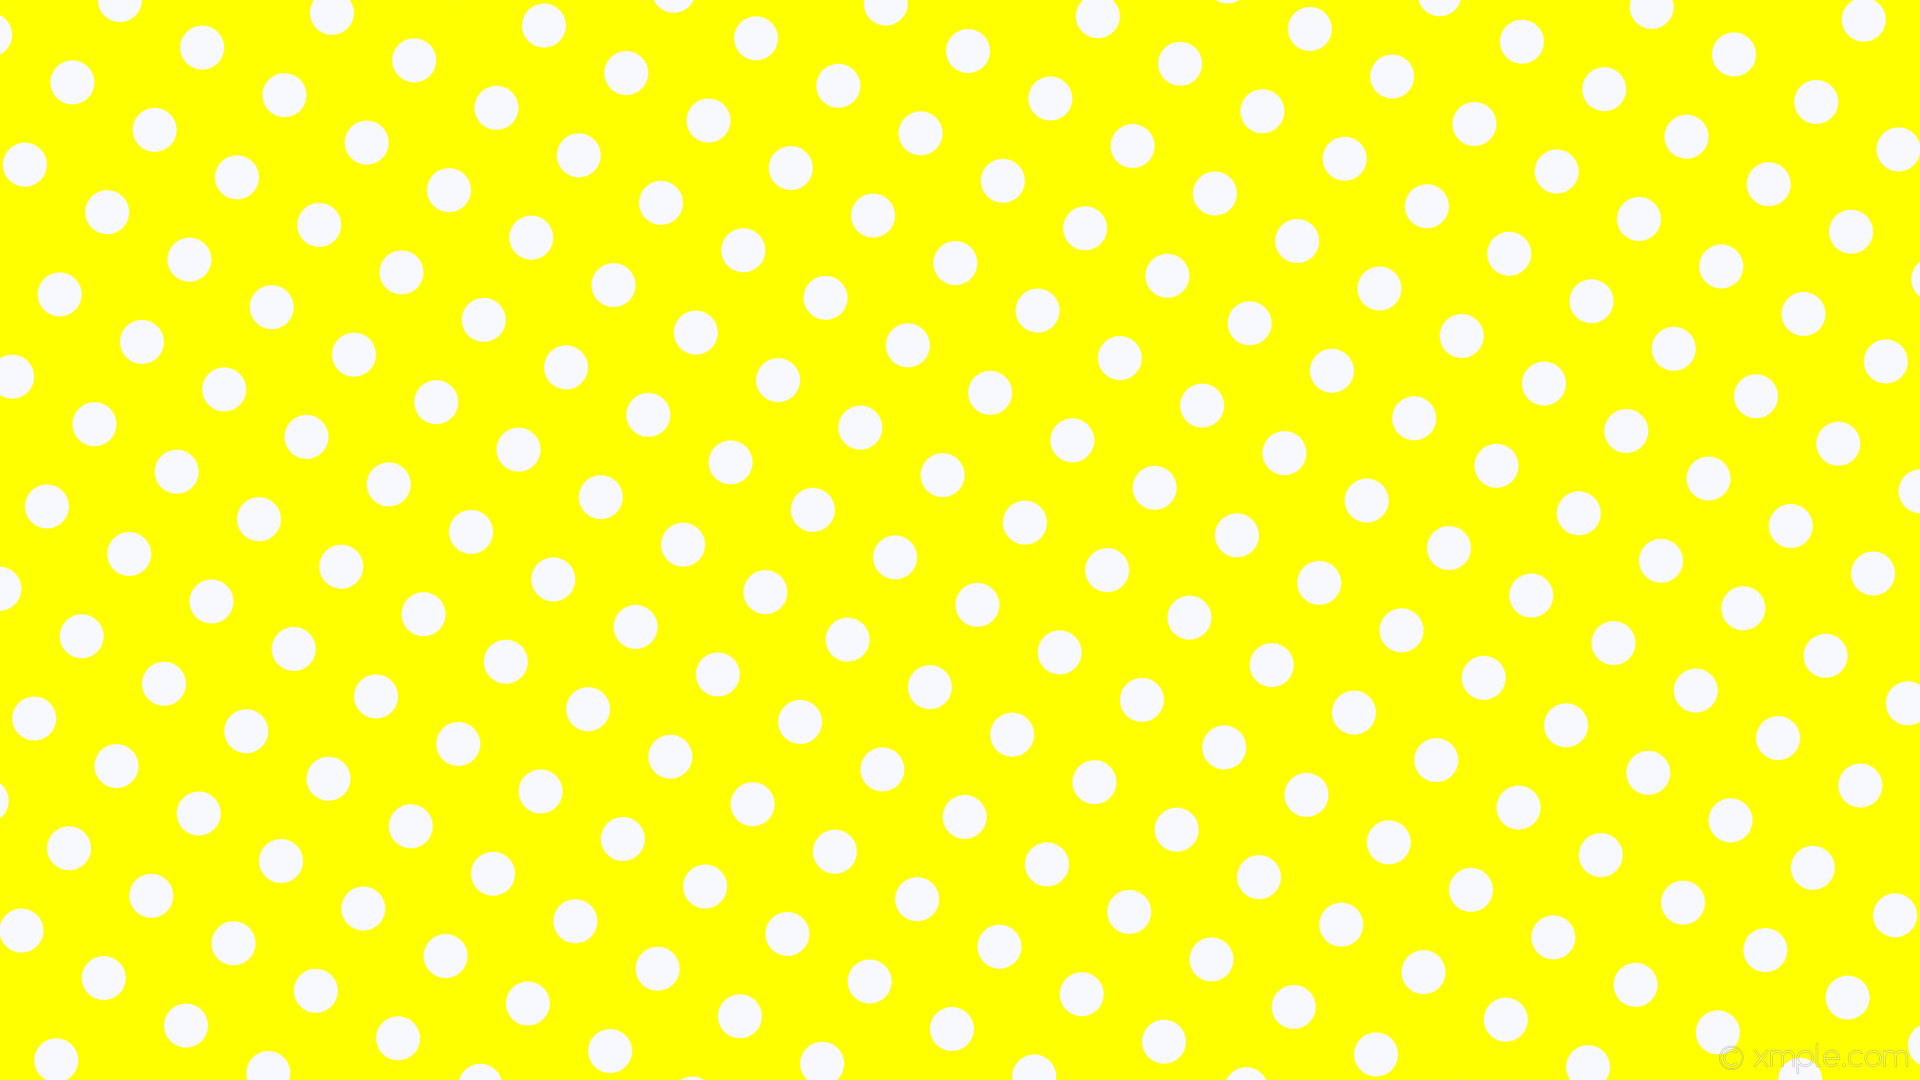 1920x1080 wallpaper yellow polka white spots dots ghost white #ffff00 #f8f8ff 330Â°  44px 95px